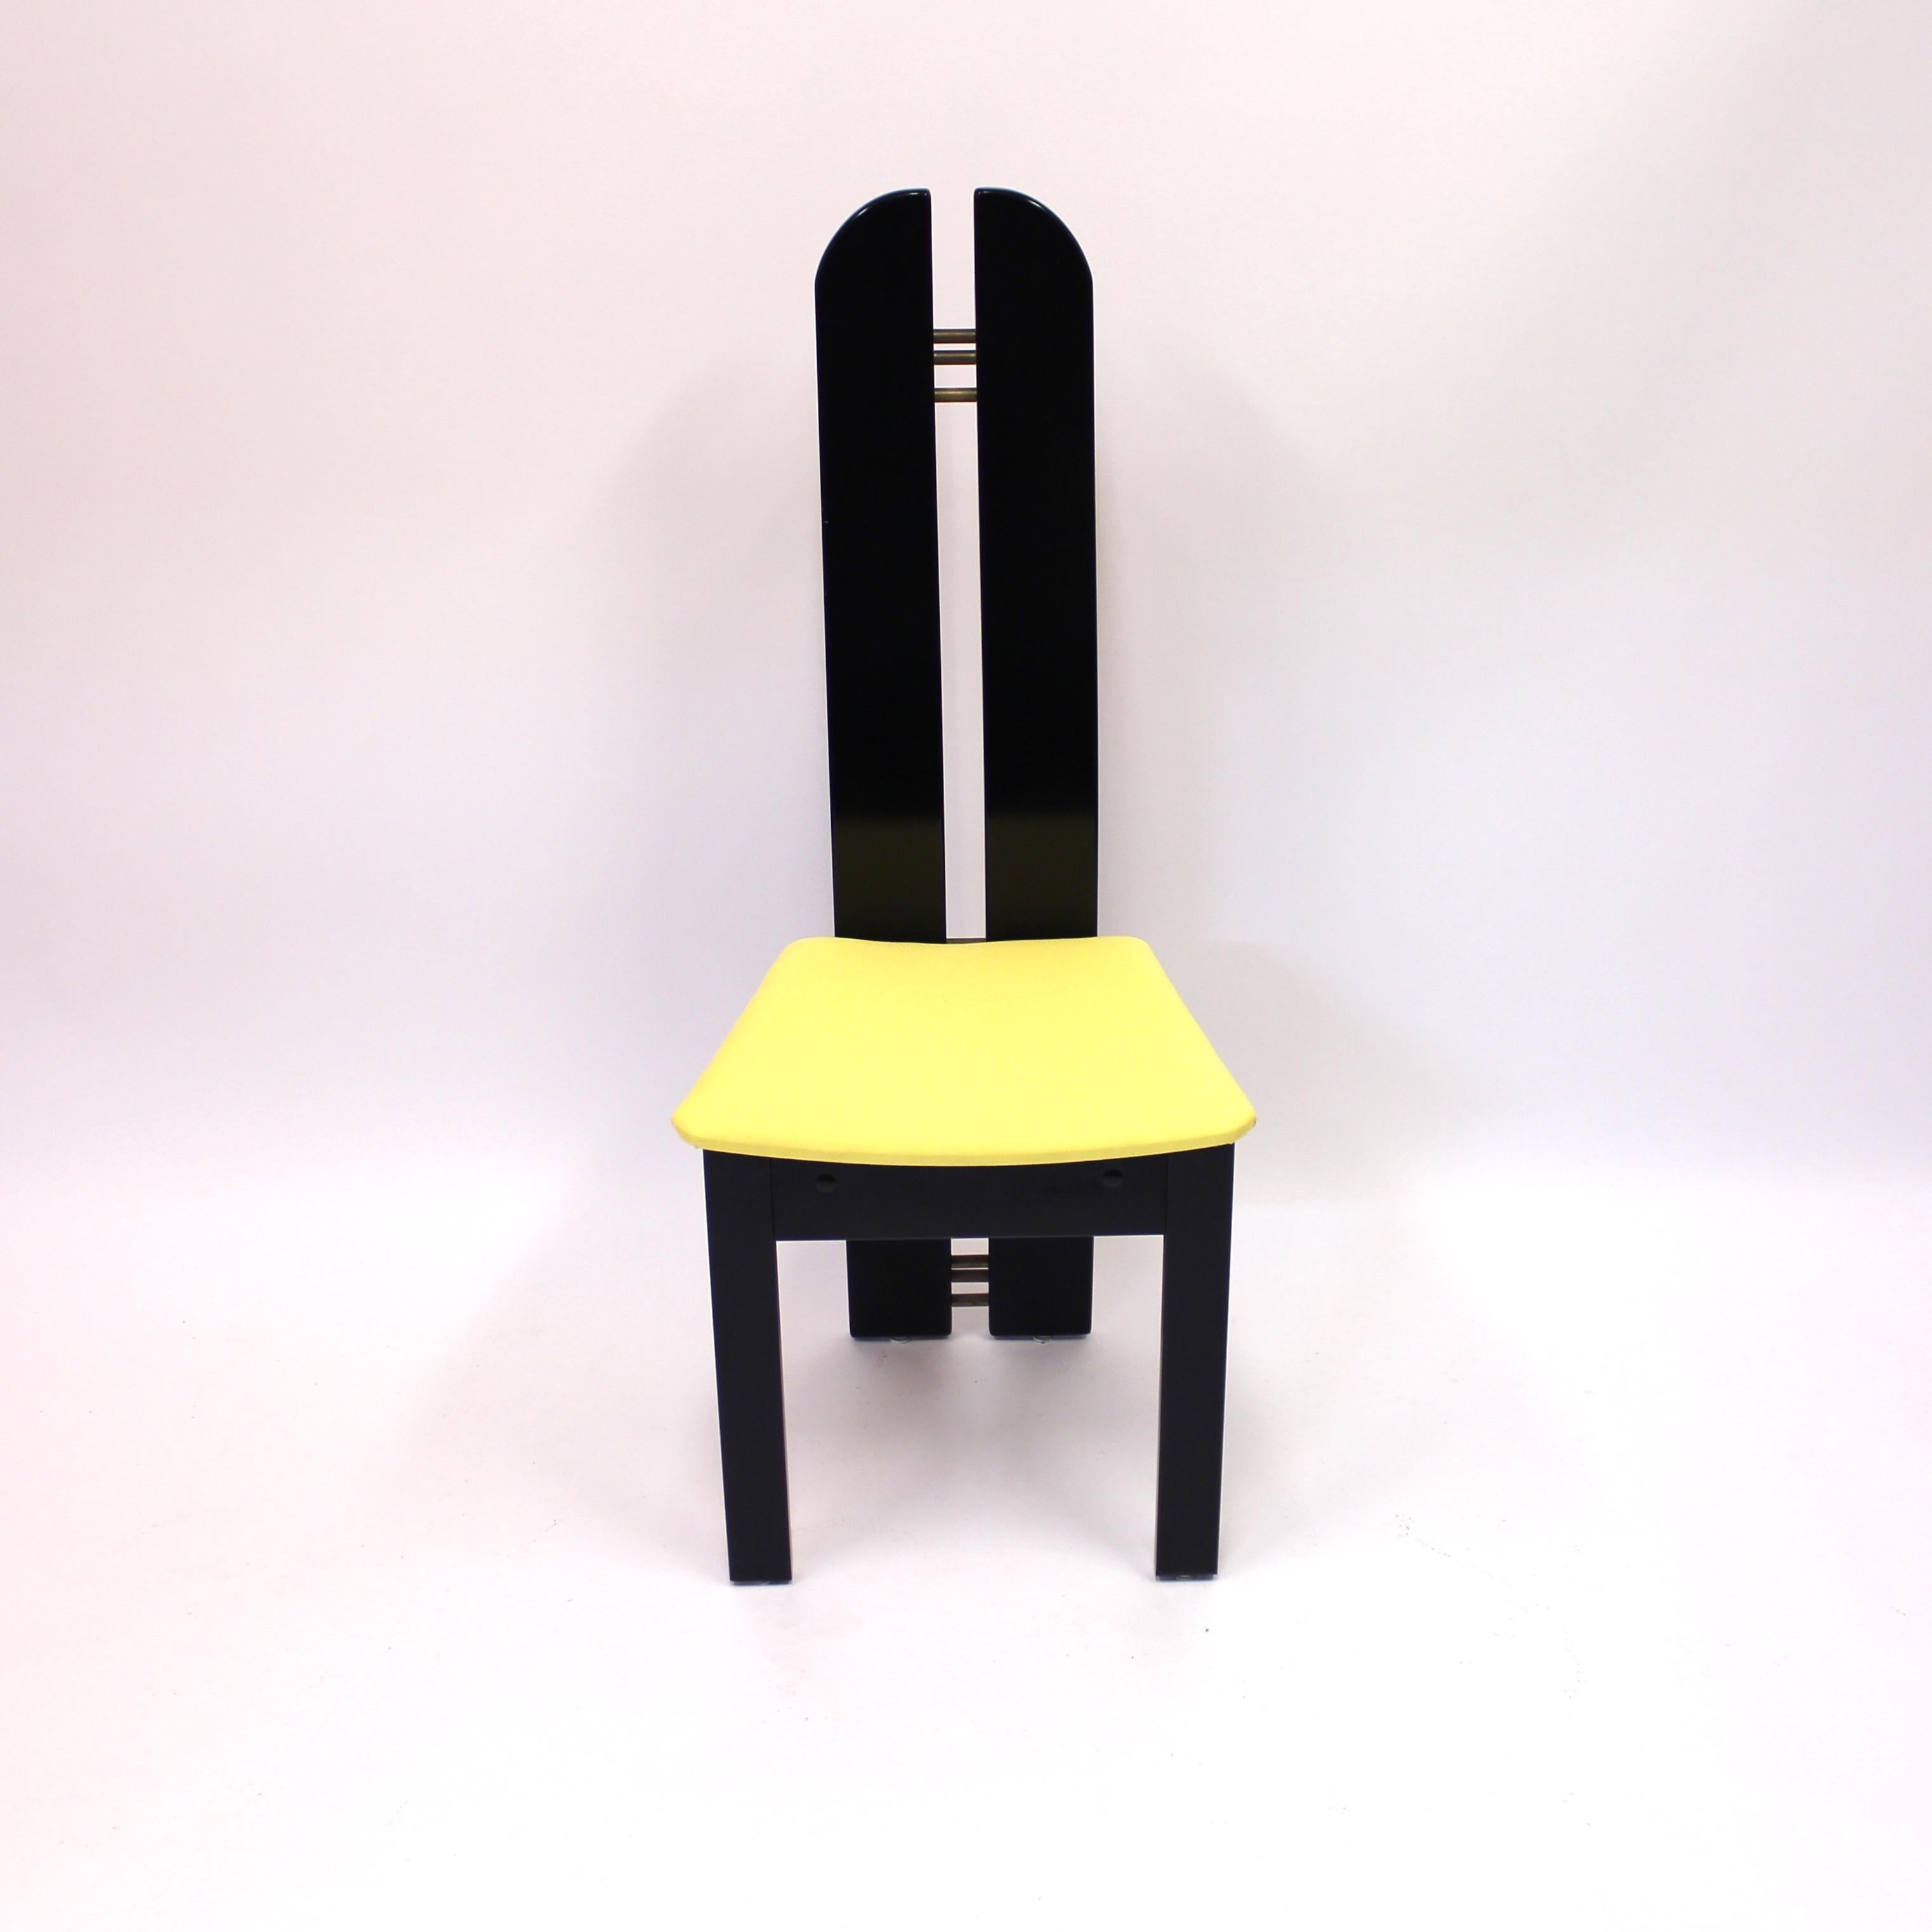 Fabric Set of 4 High Back Postmodern Chairs Form Mørkøv Møbelindustri Aps, 1980s For Sale